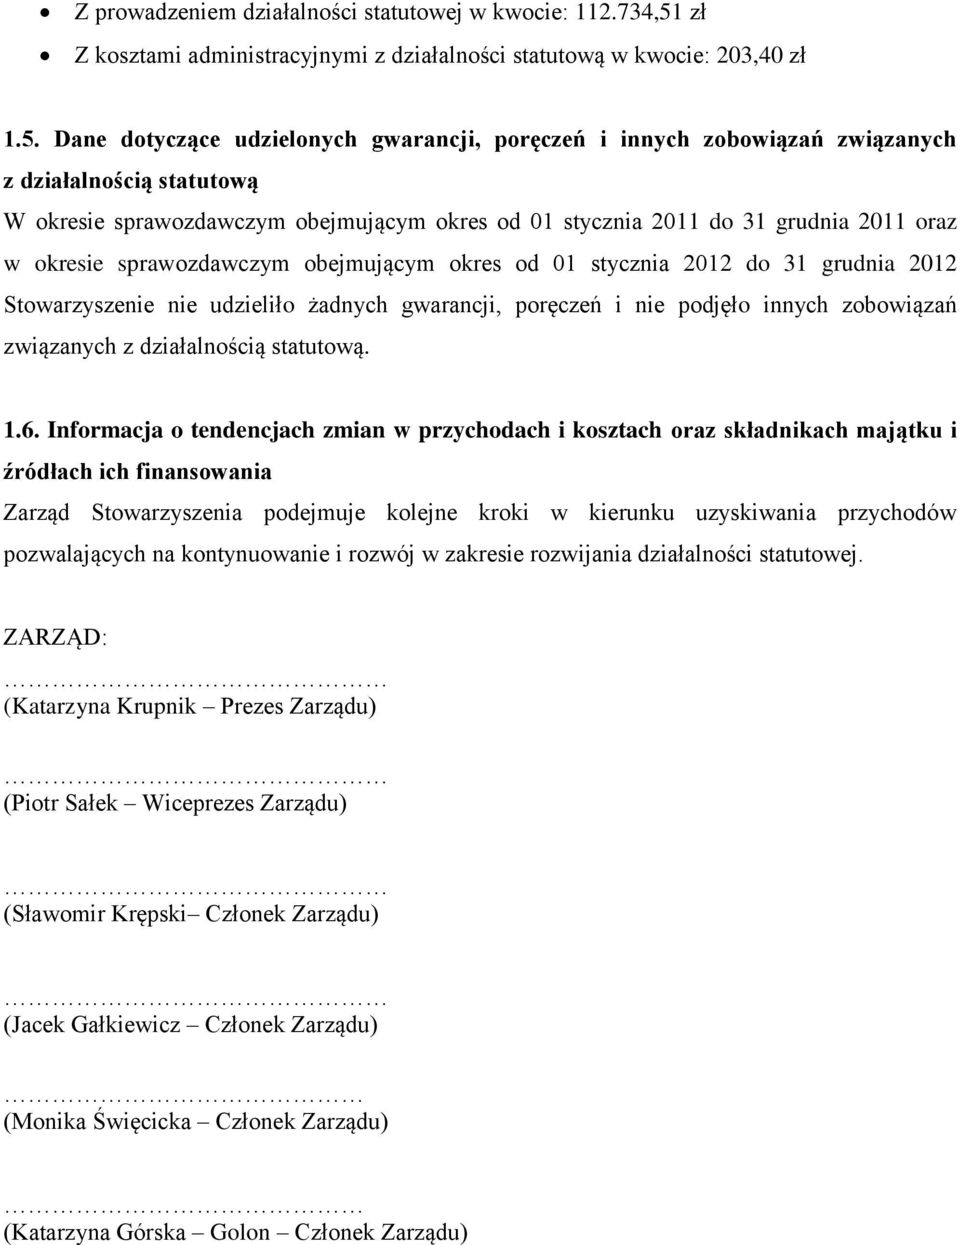 Dane dotyczące udzielonych gwarancji, poręczeń i innych zobowiązań związanych z działalnością statutową W okresie sprawozdawczym obejmującym okres od 01 stycznia 2011 do 31 grudnia 2011 oraz w